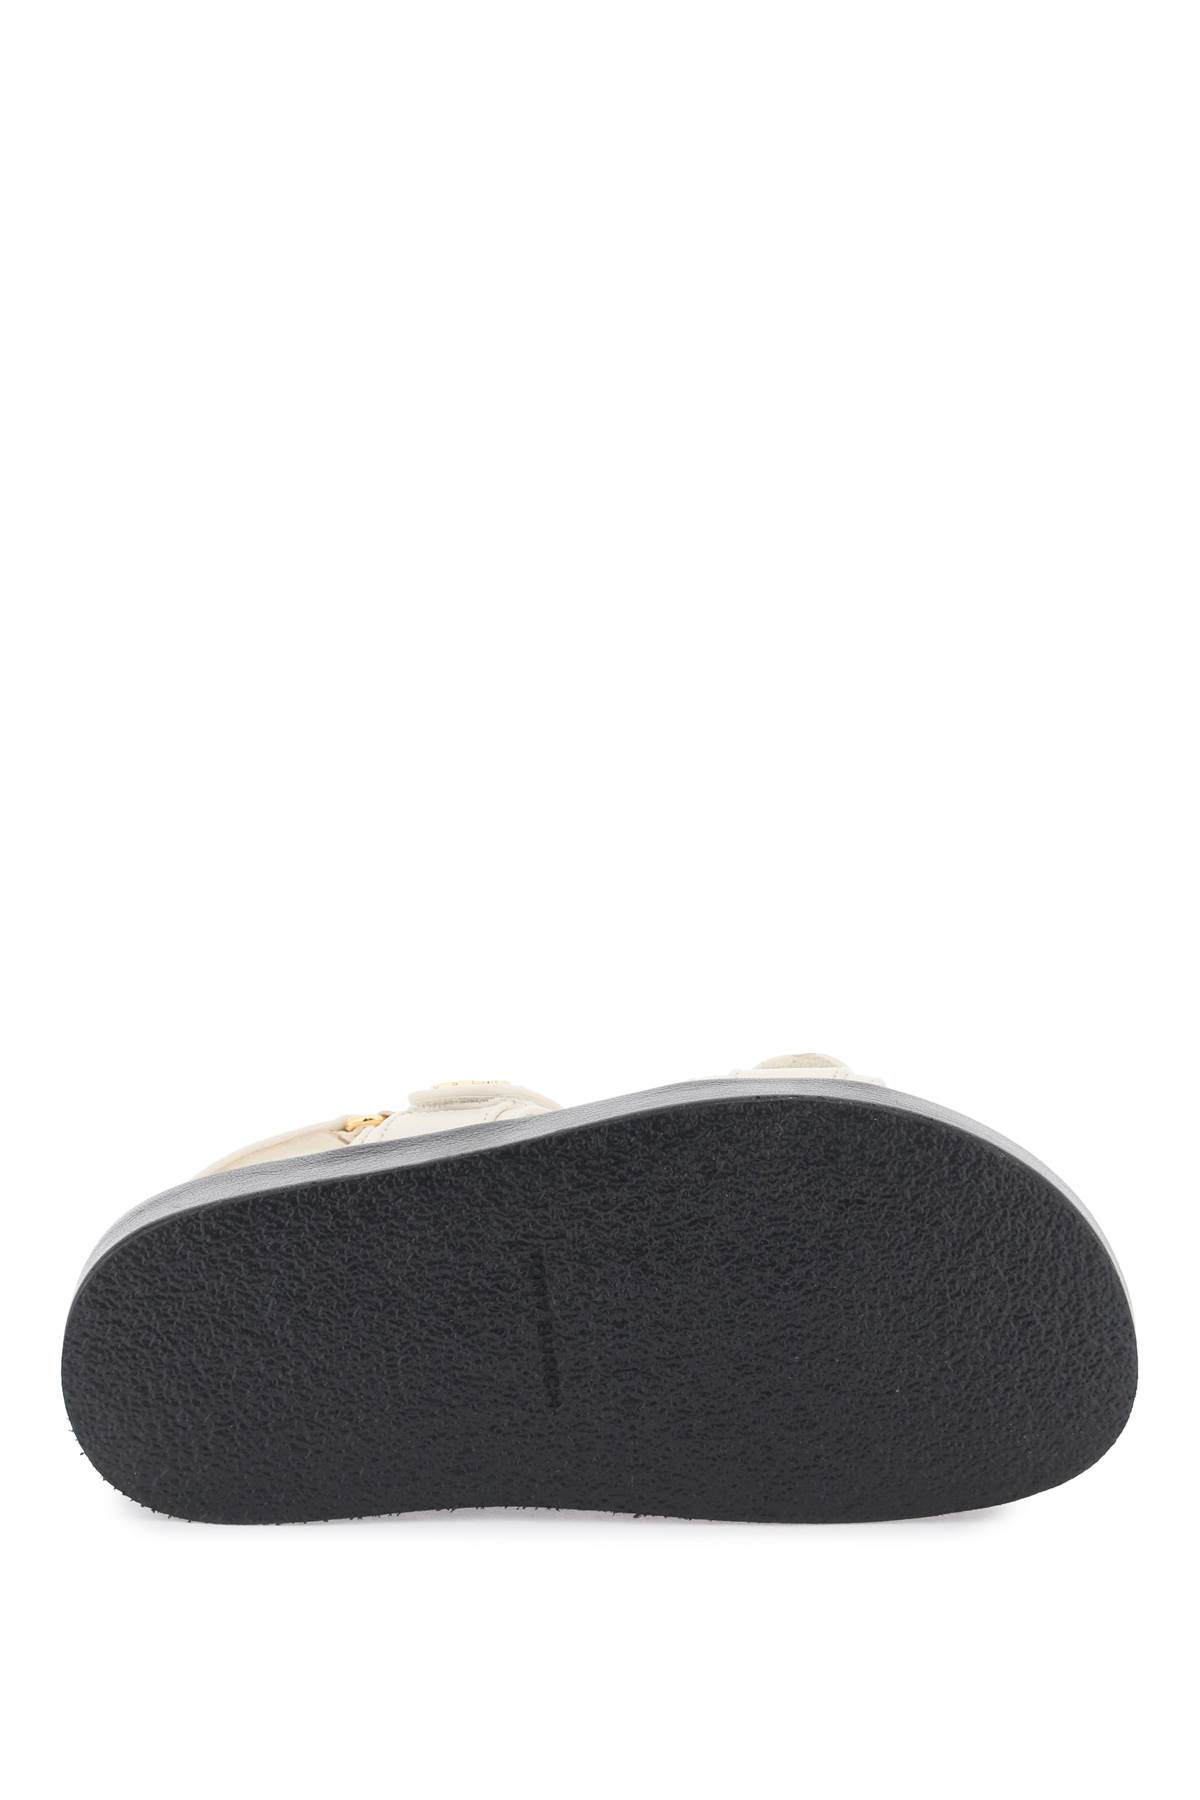 Tory Burch Kira Slingback Sport Platform Sandal In White | ModeSens